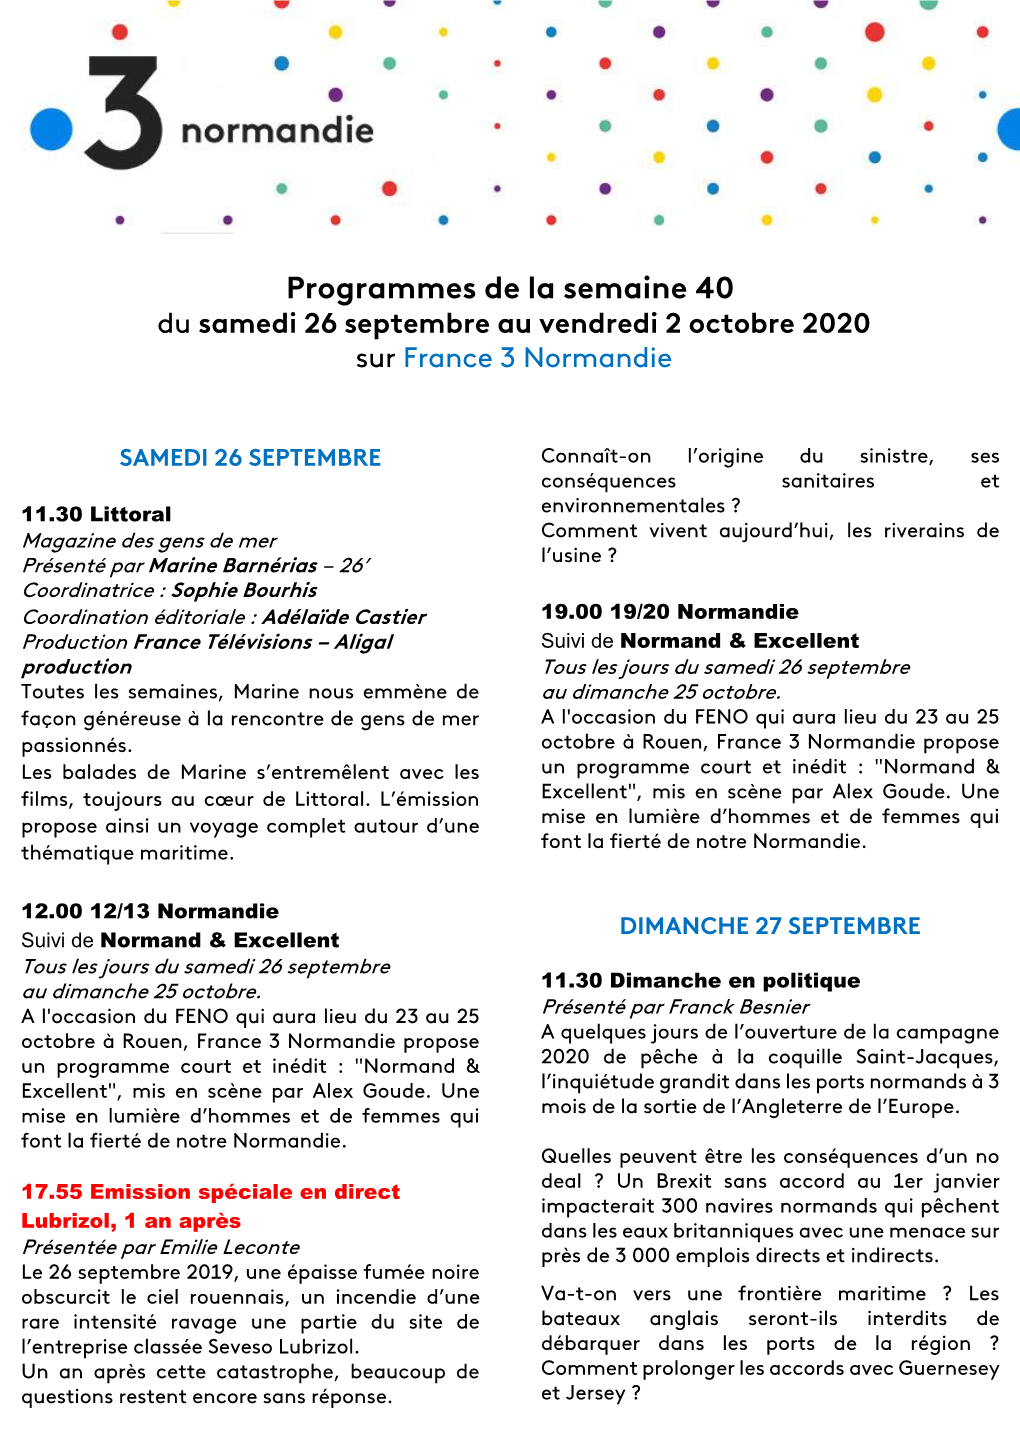 Programmes De La Semaine 40 Du Samedi 26 Septembre Au Vendredi 2 Octobre 2020 Sur France 3 Normandie